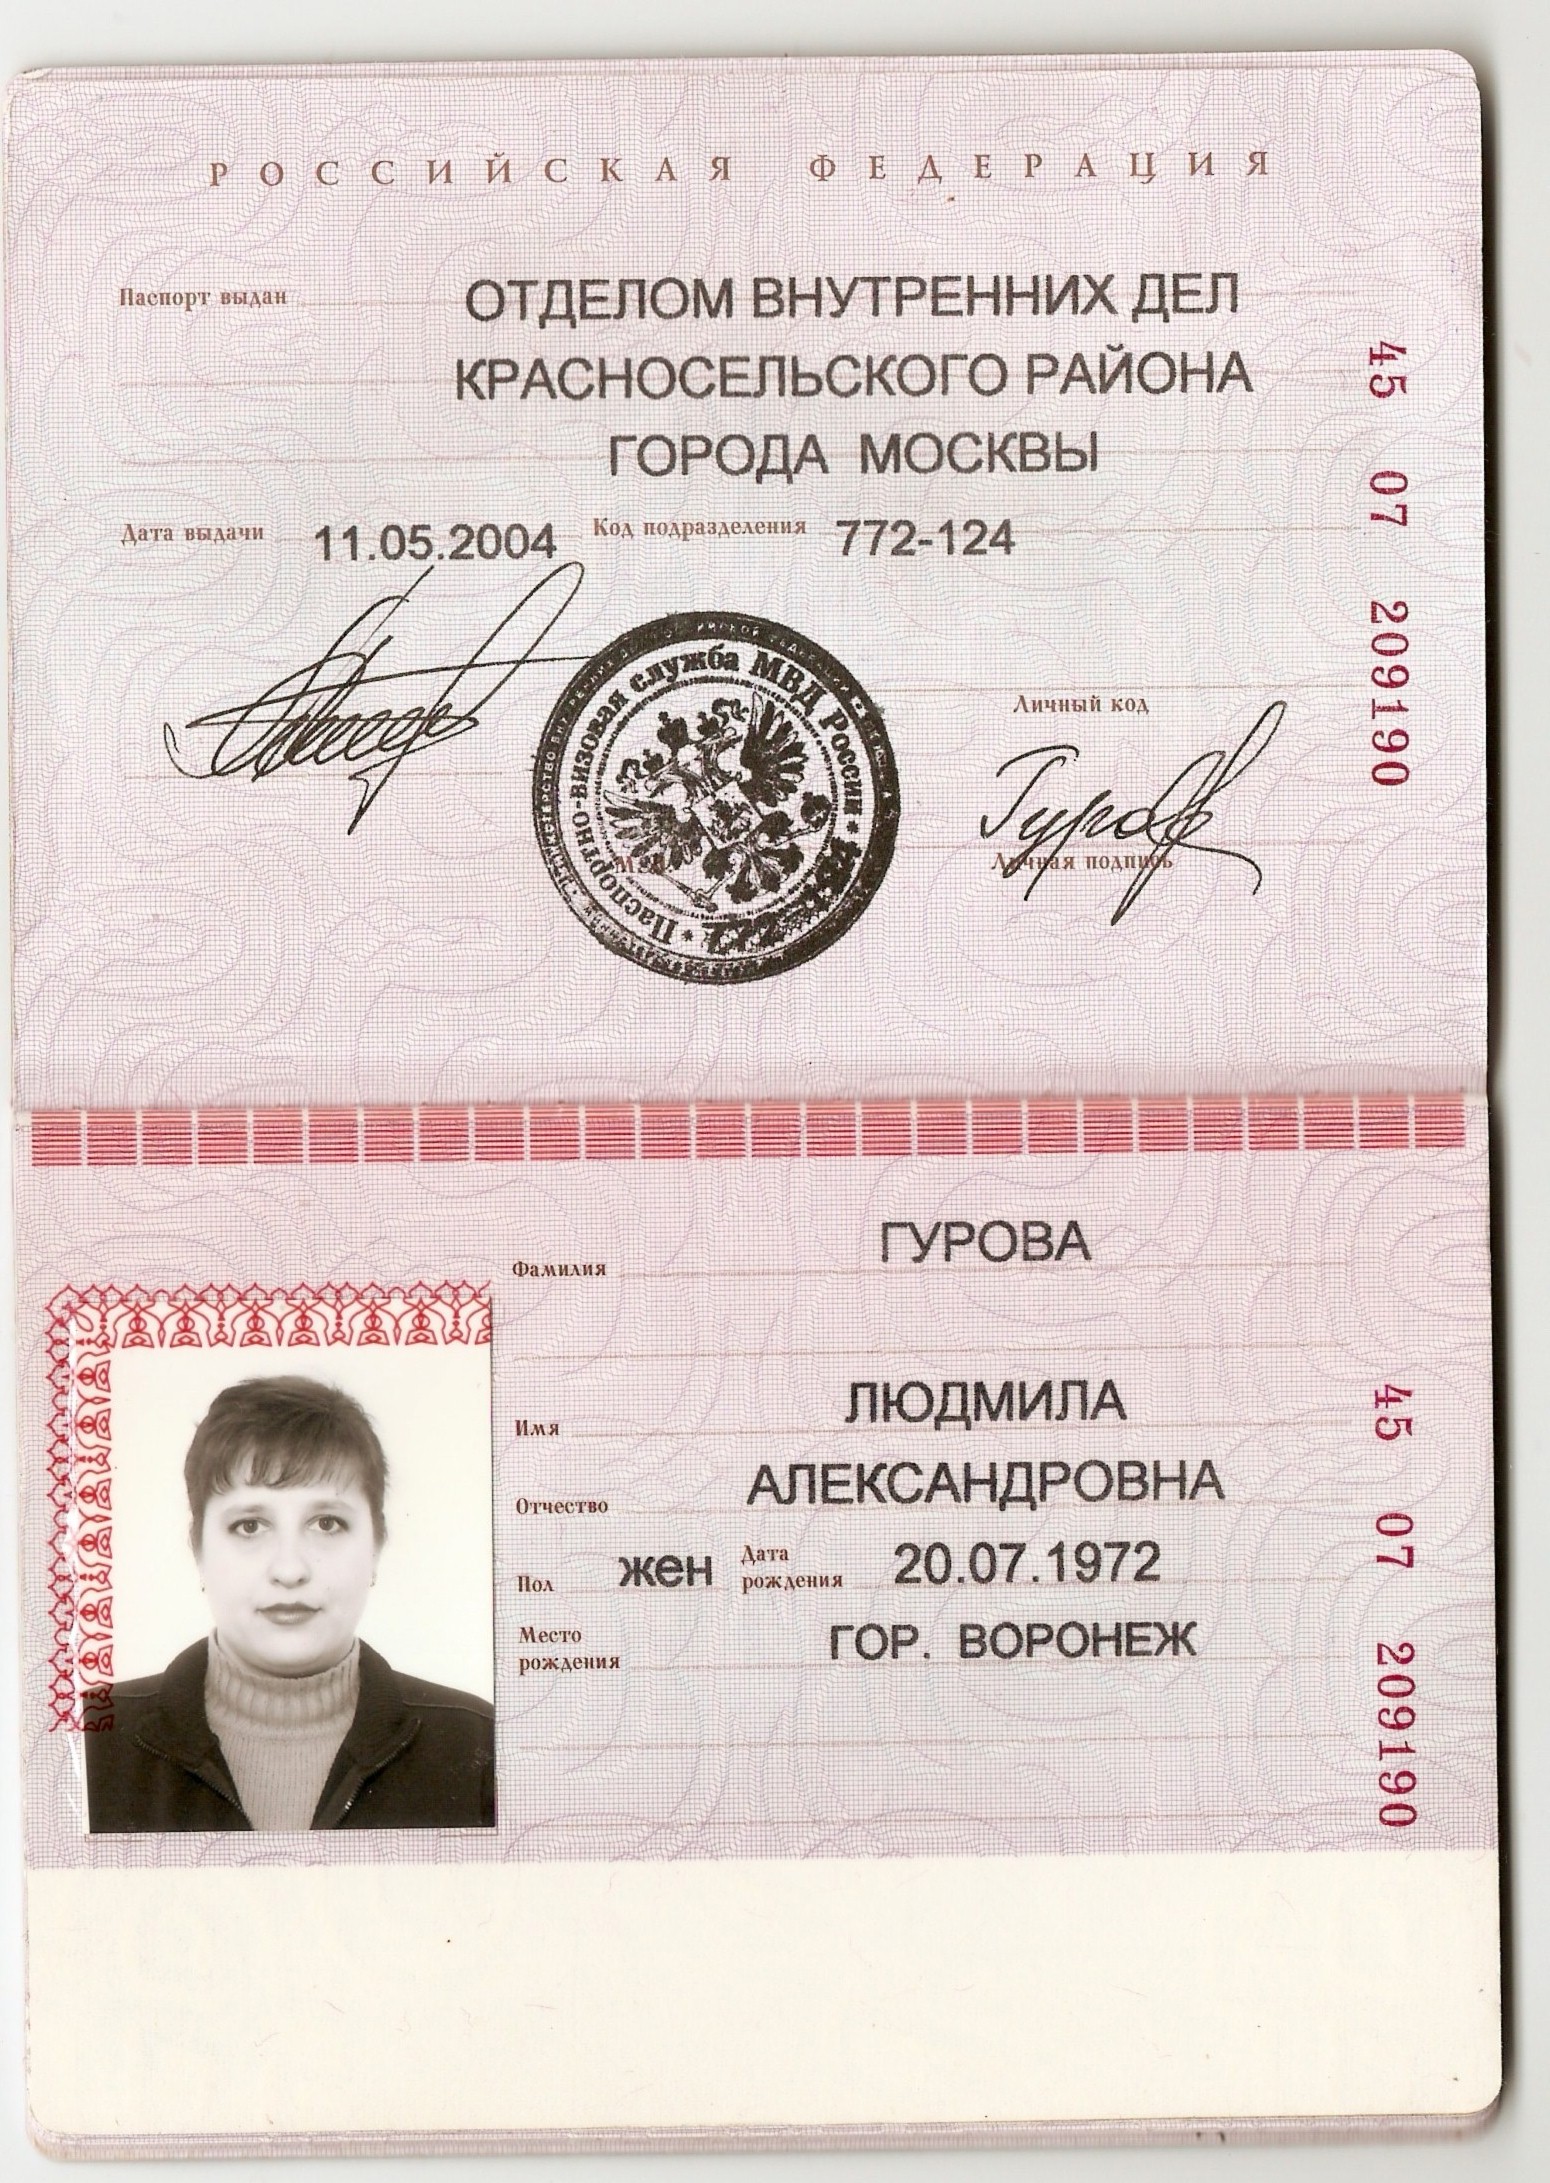 Скан паспорта